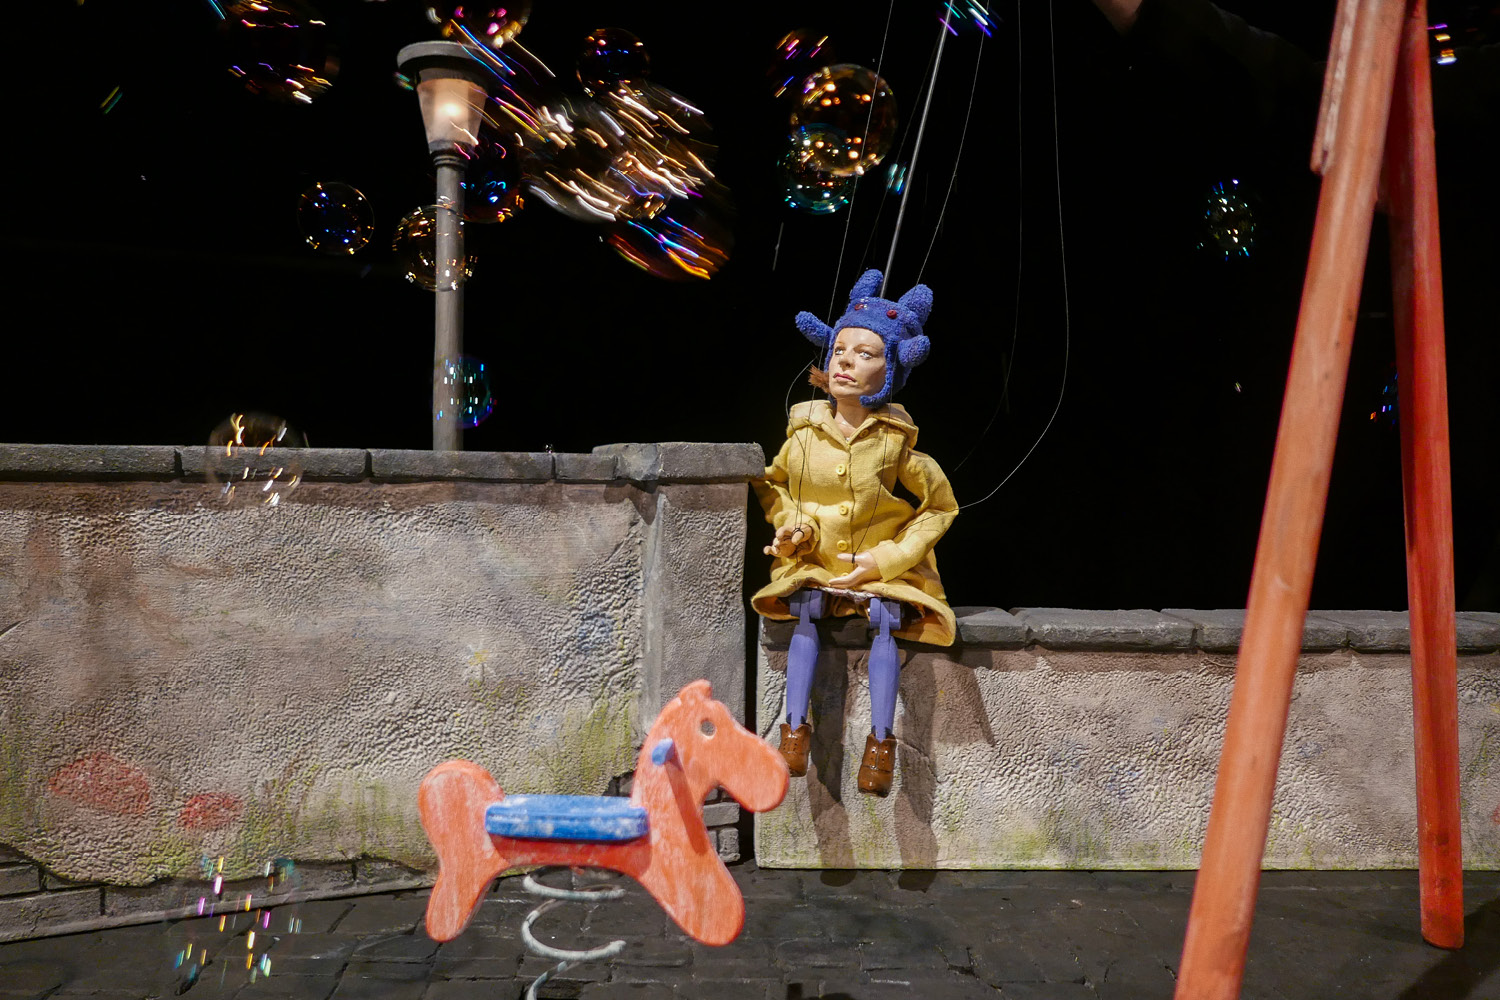 Eine Marionettenfrau mit Mütze und Regenmantel sitzt auf einem Spielplatzgelände mit Schaukelpferd und wird von Seifenblasen angepustet